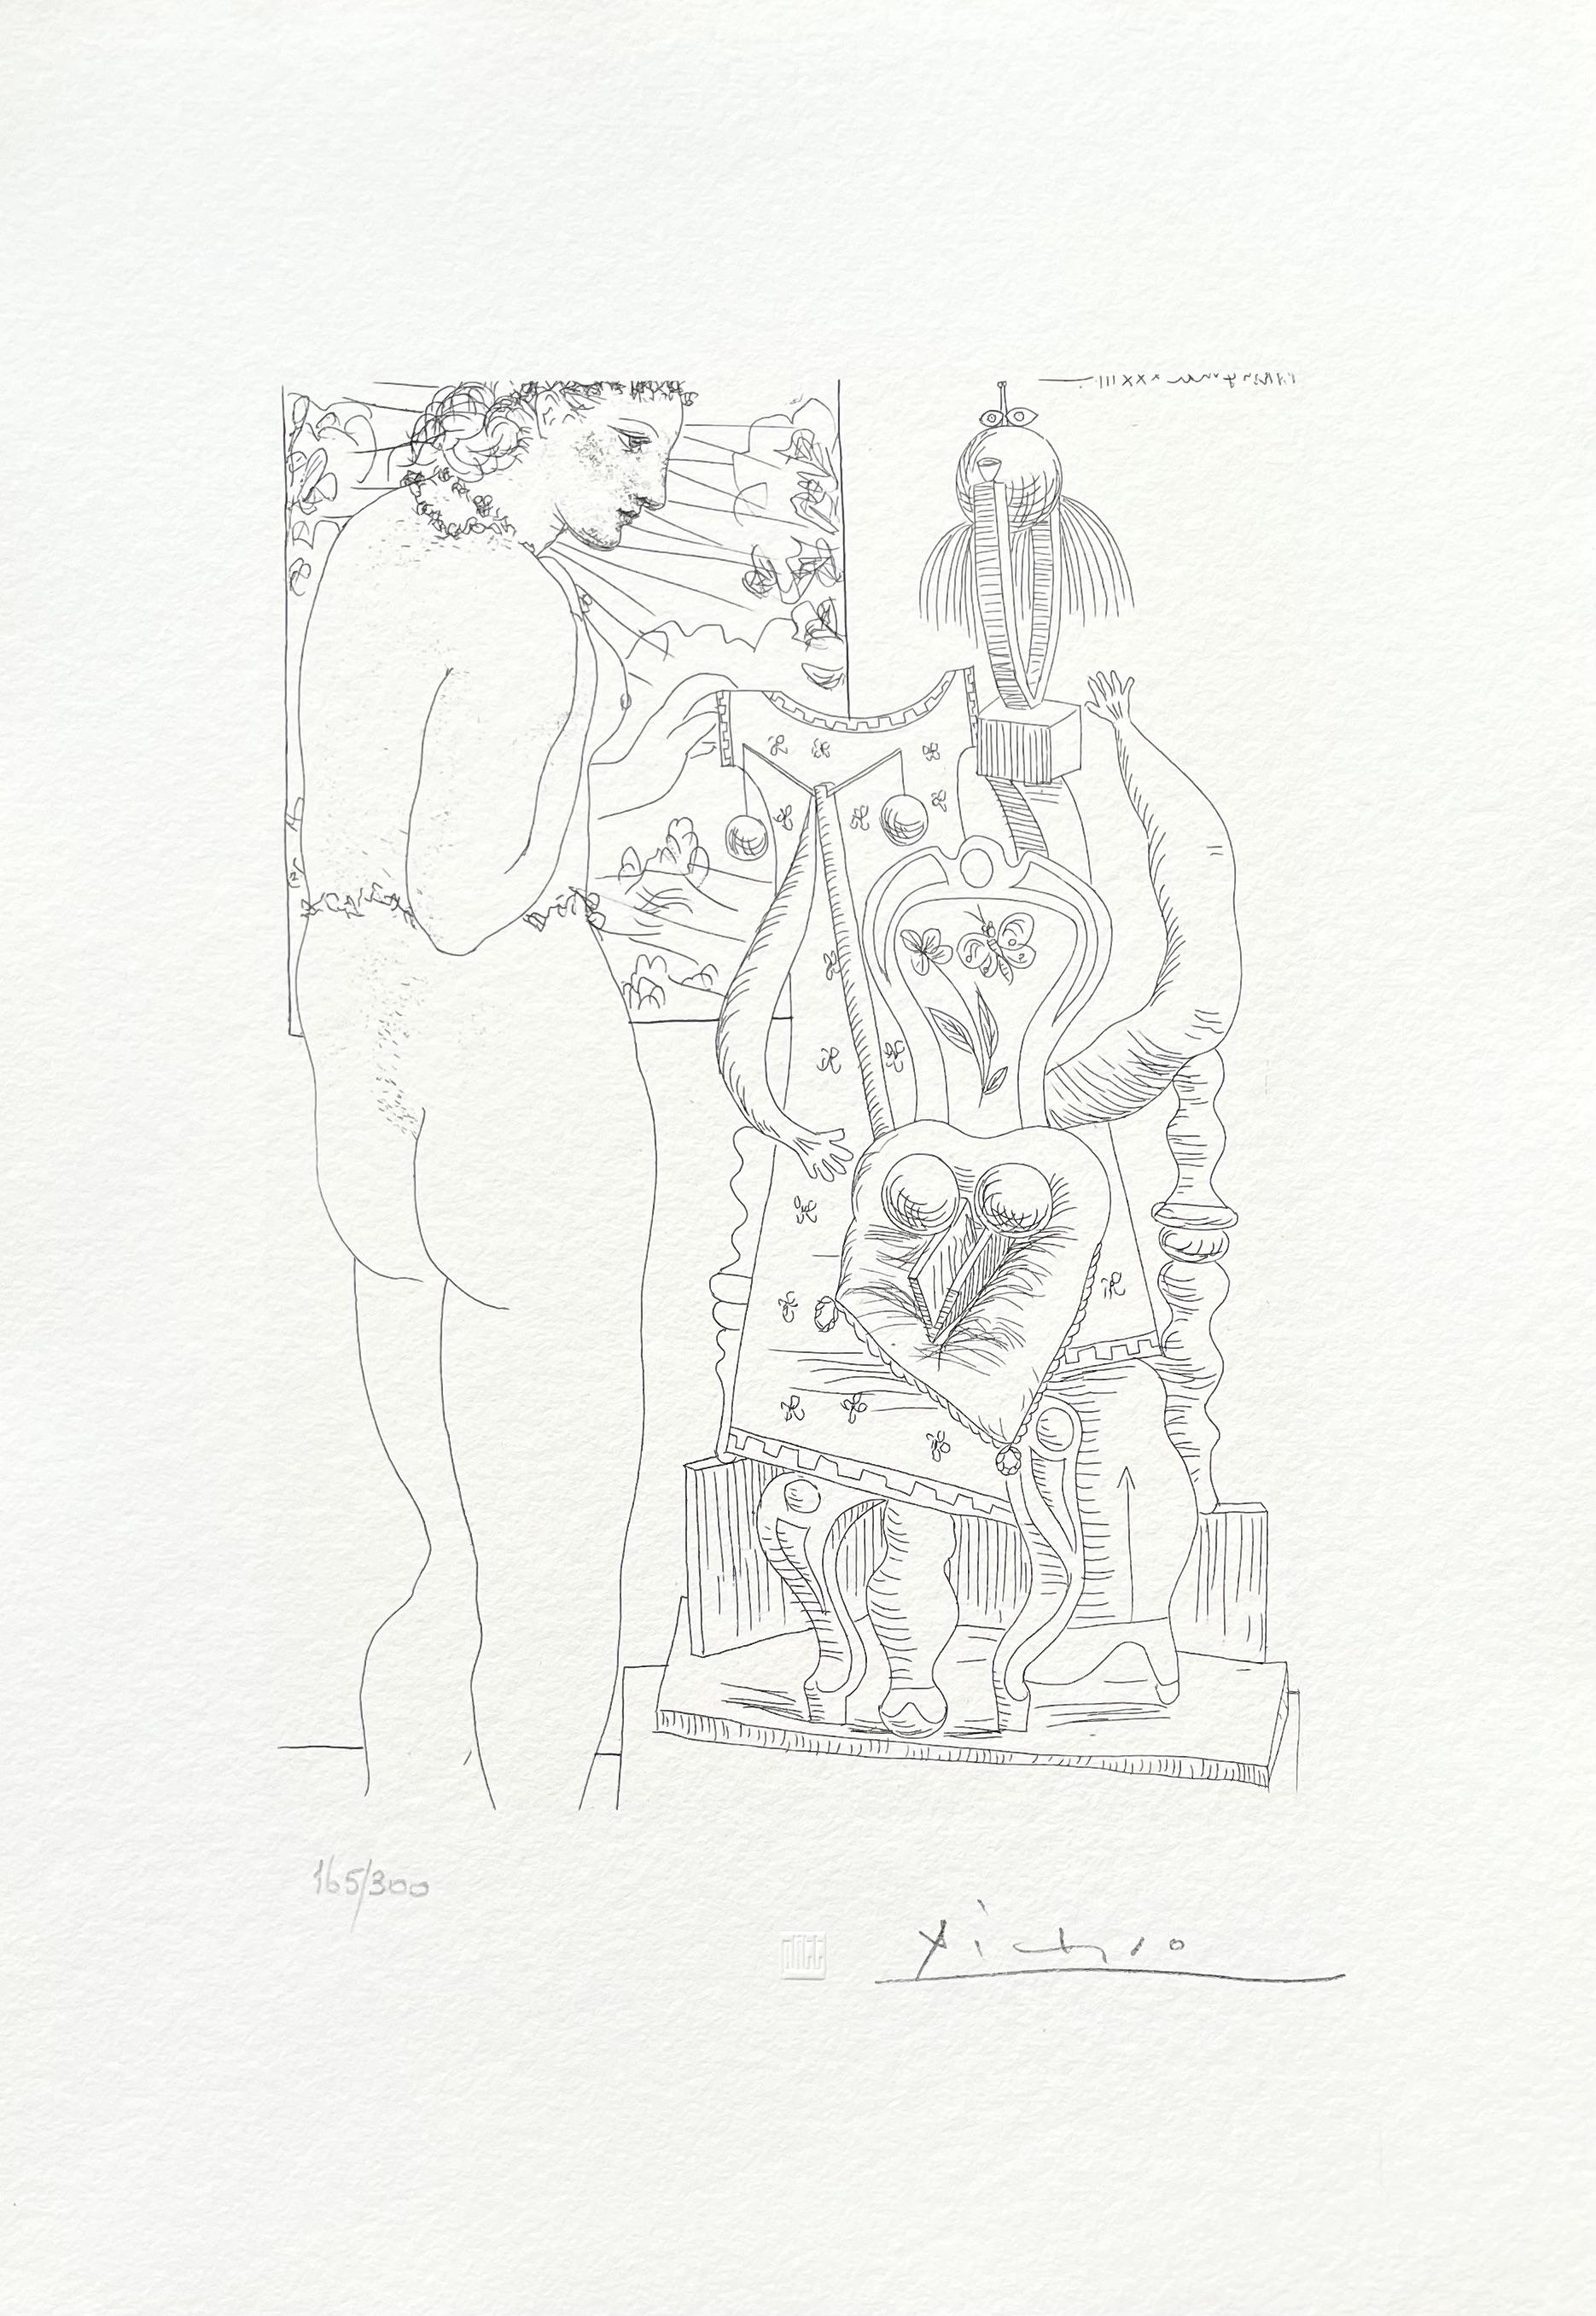 Picasso, Marie-Thérèse considérant son Effigie surréaliste sculptée (after) - Print by Pablo Picasso